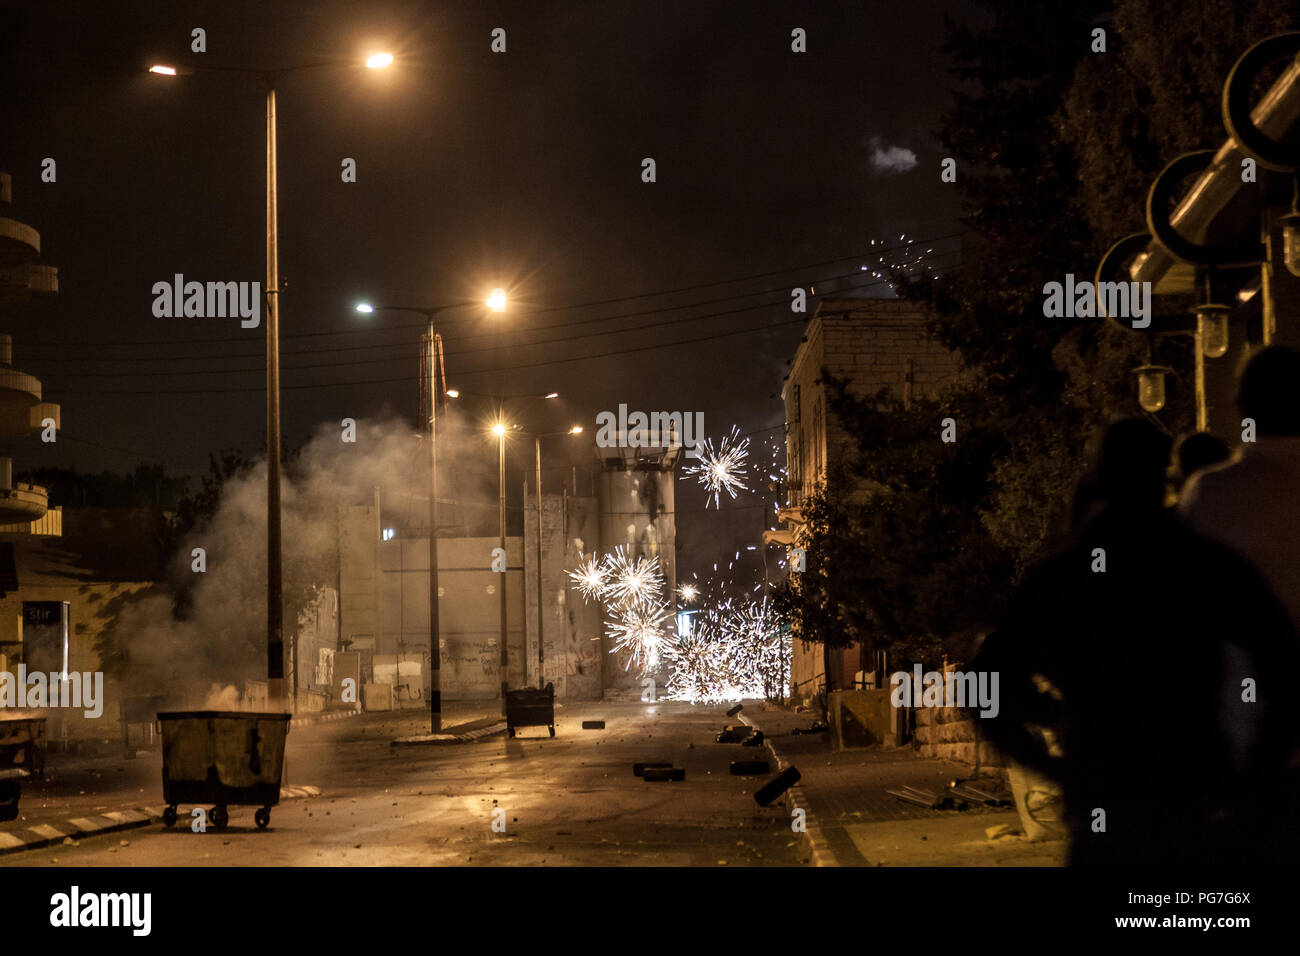 Belén, Palestina, 23 de julio de 2014: Los palestinos disparar fuegos artificiales en el muro de separación en Belén durante la noche disturbios dirigidos contra Israel. Foto de stock